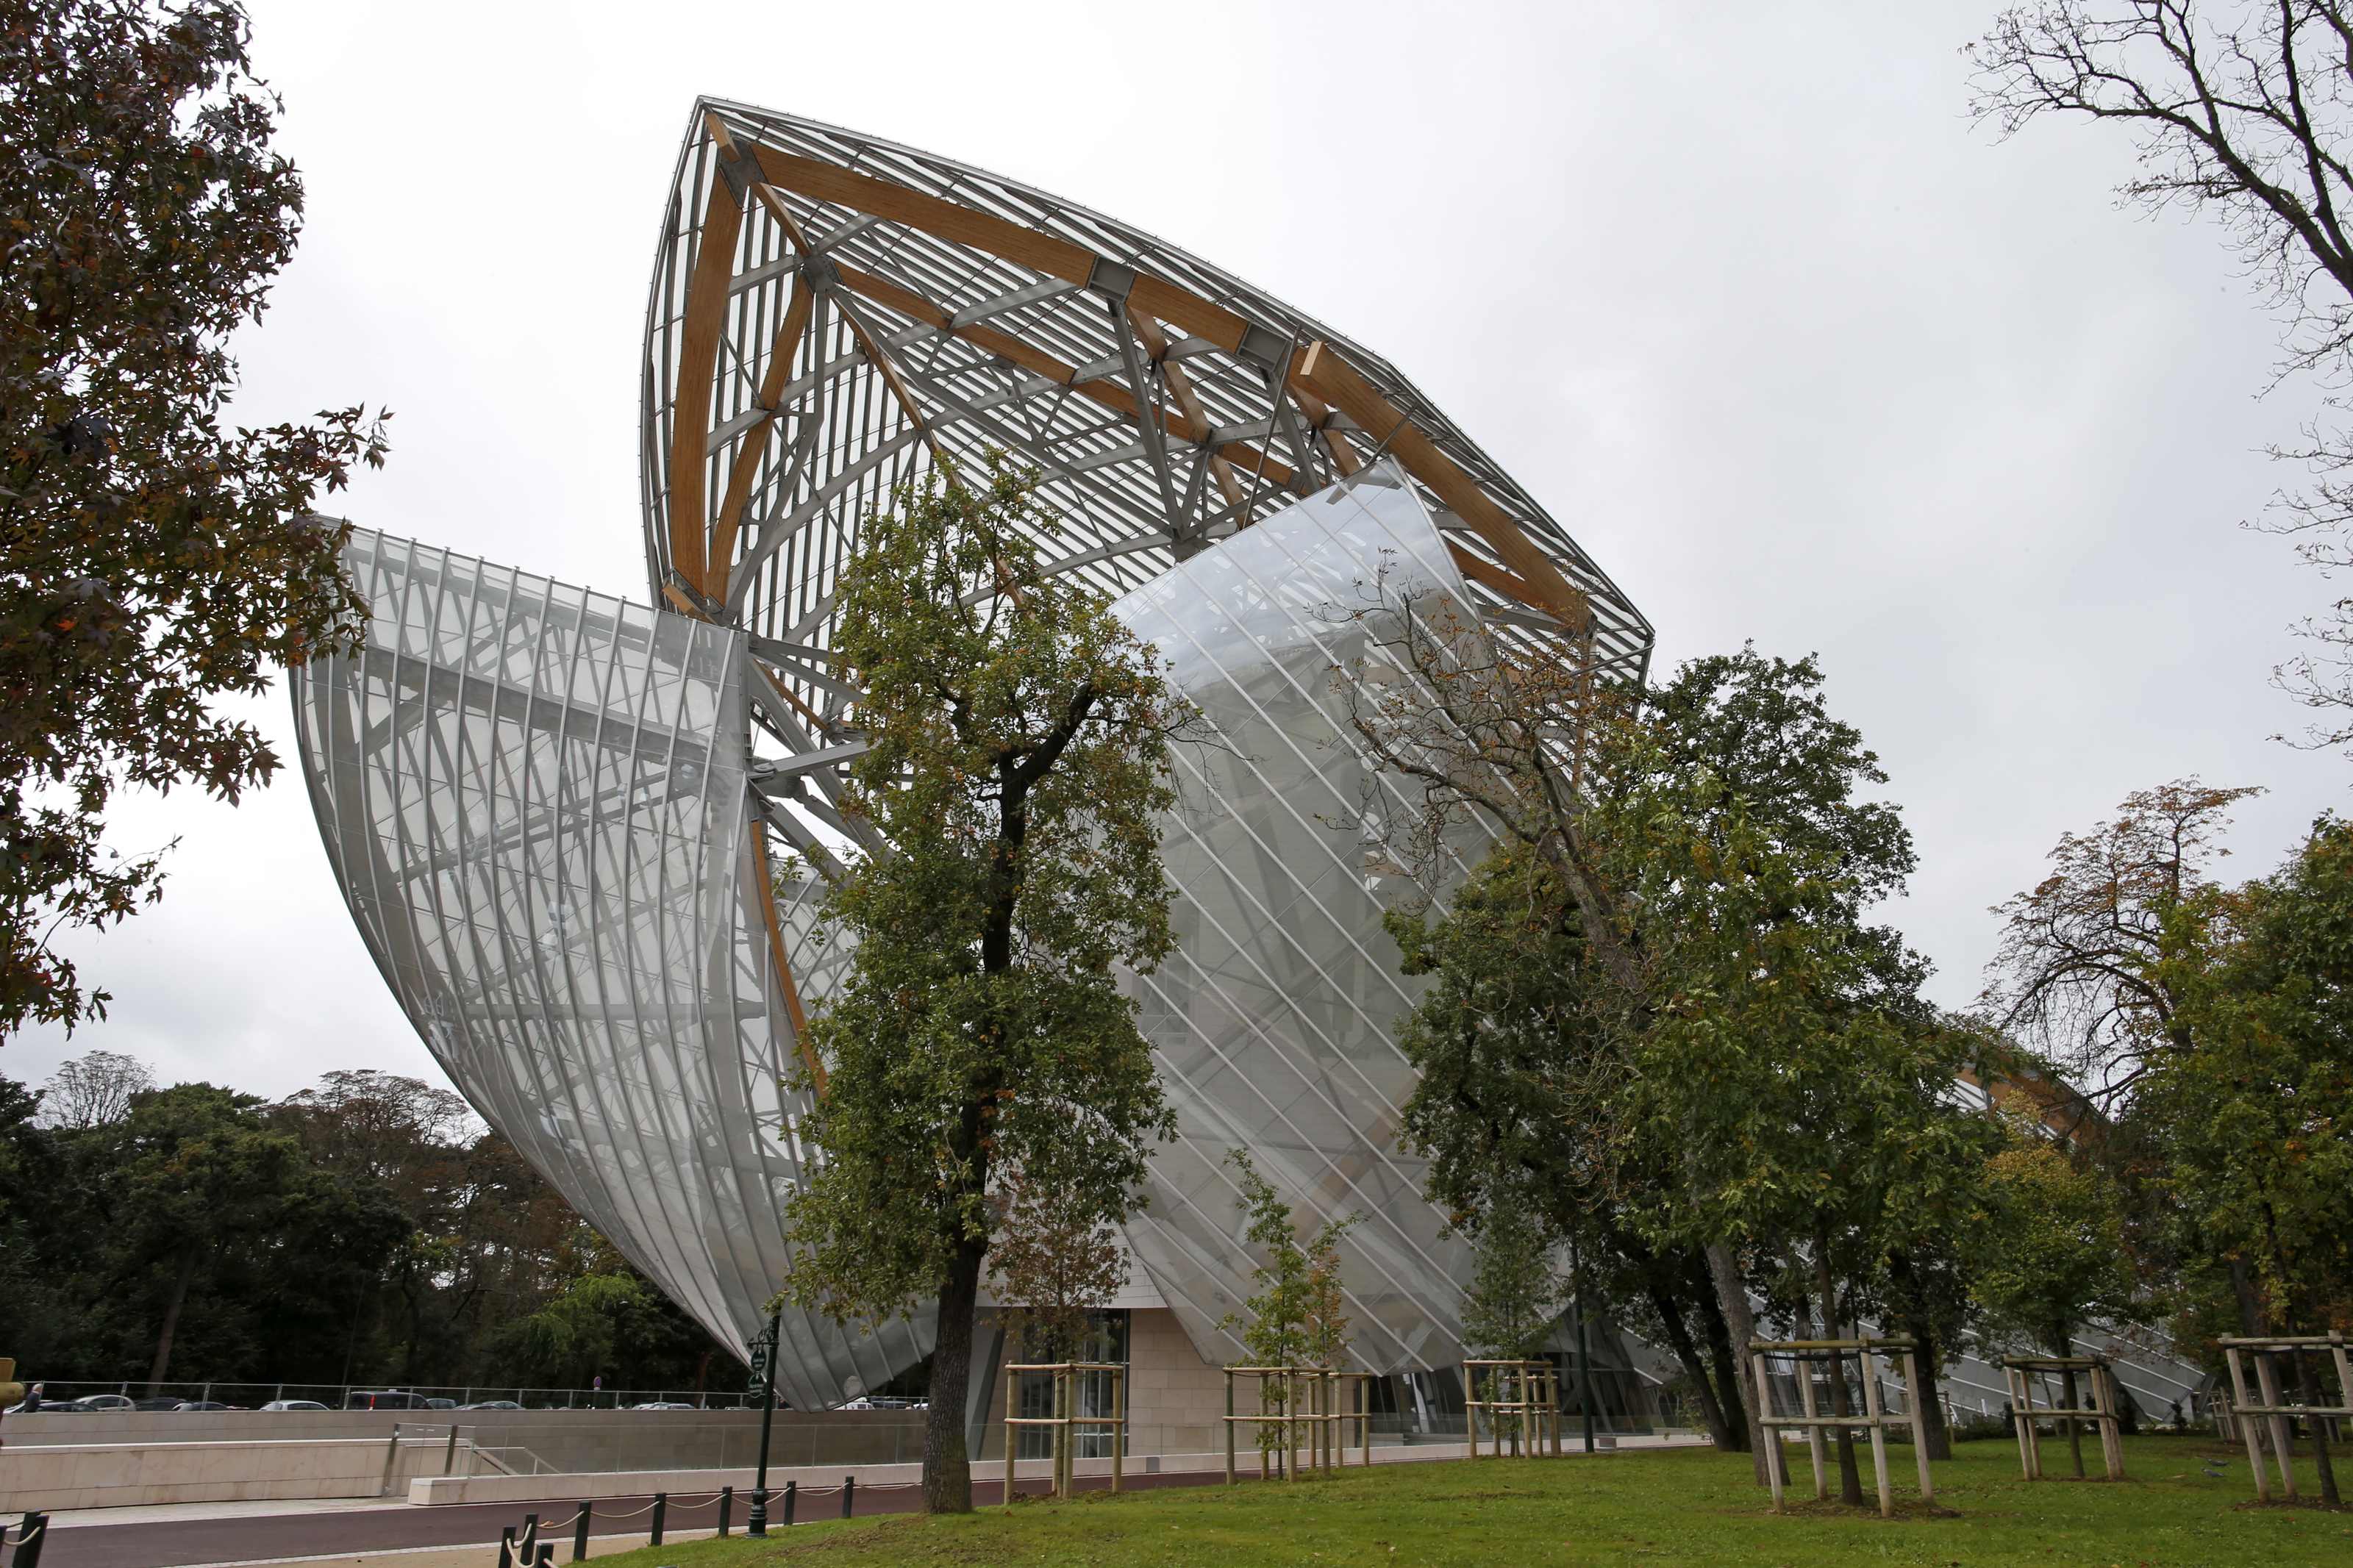 La Fondation Louis Vuitton - Paris' New Contemporary Art Museum